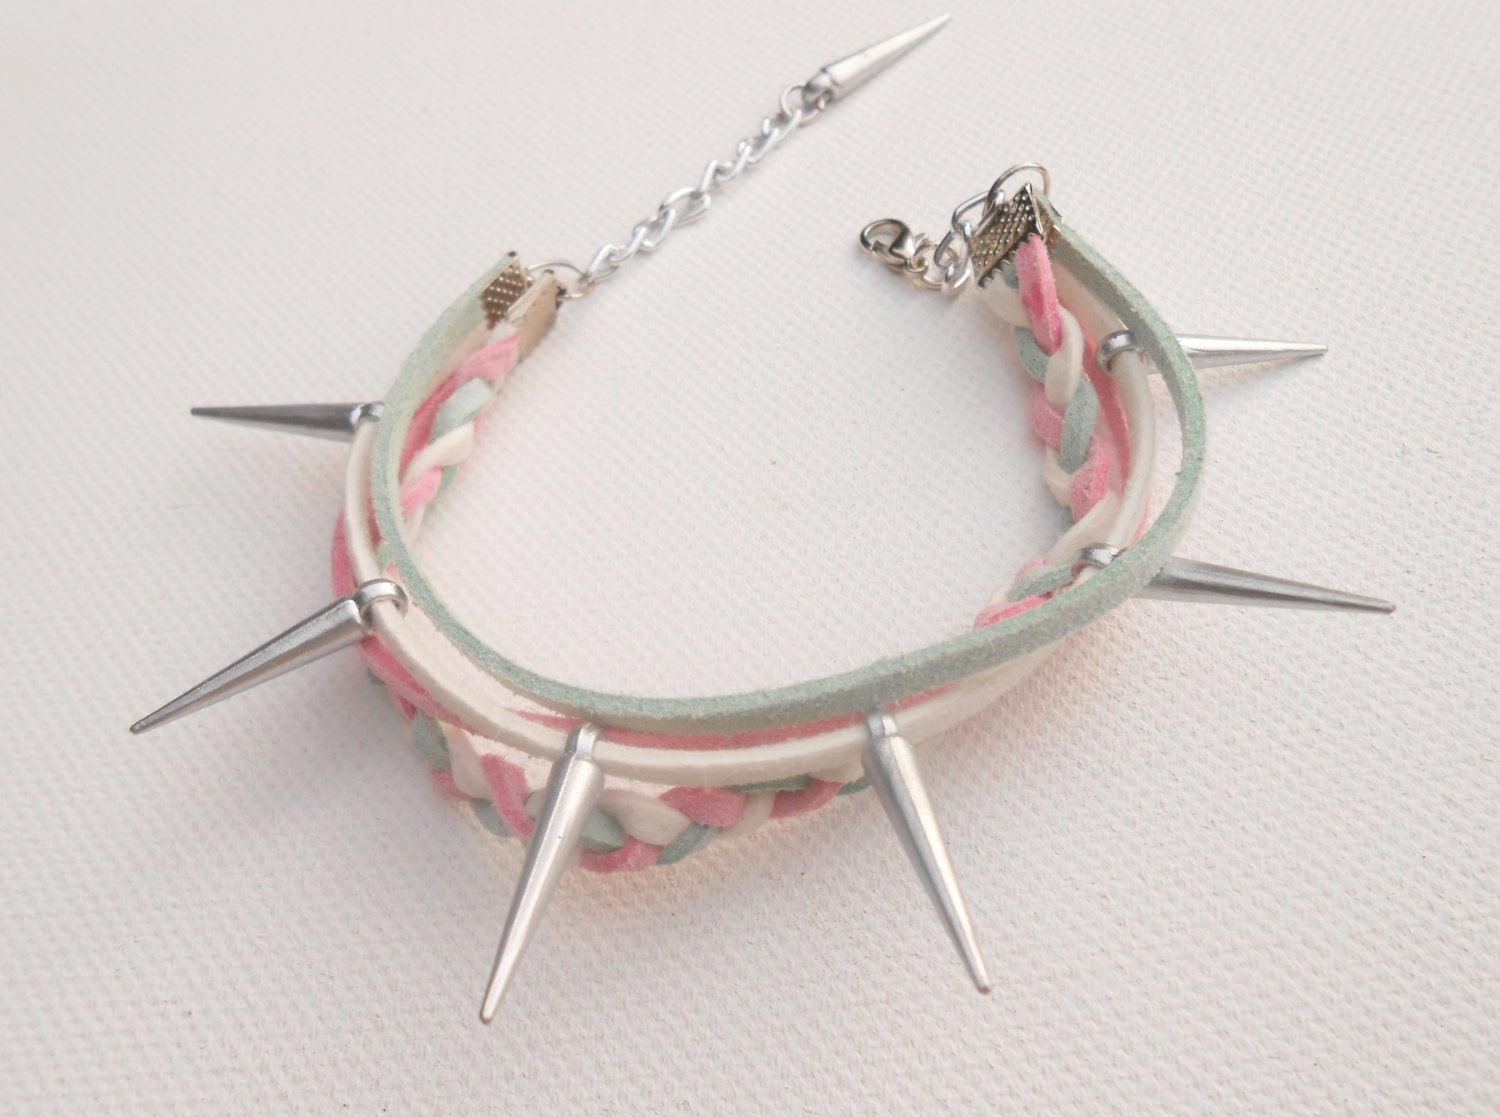 Friendship bracelet en cuir de suede rose/menthe/blanc et spikes